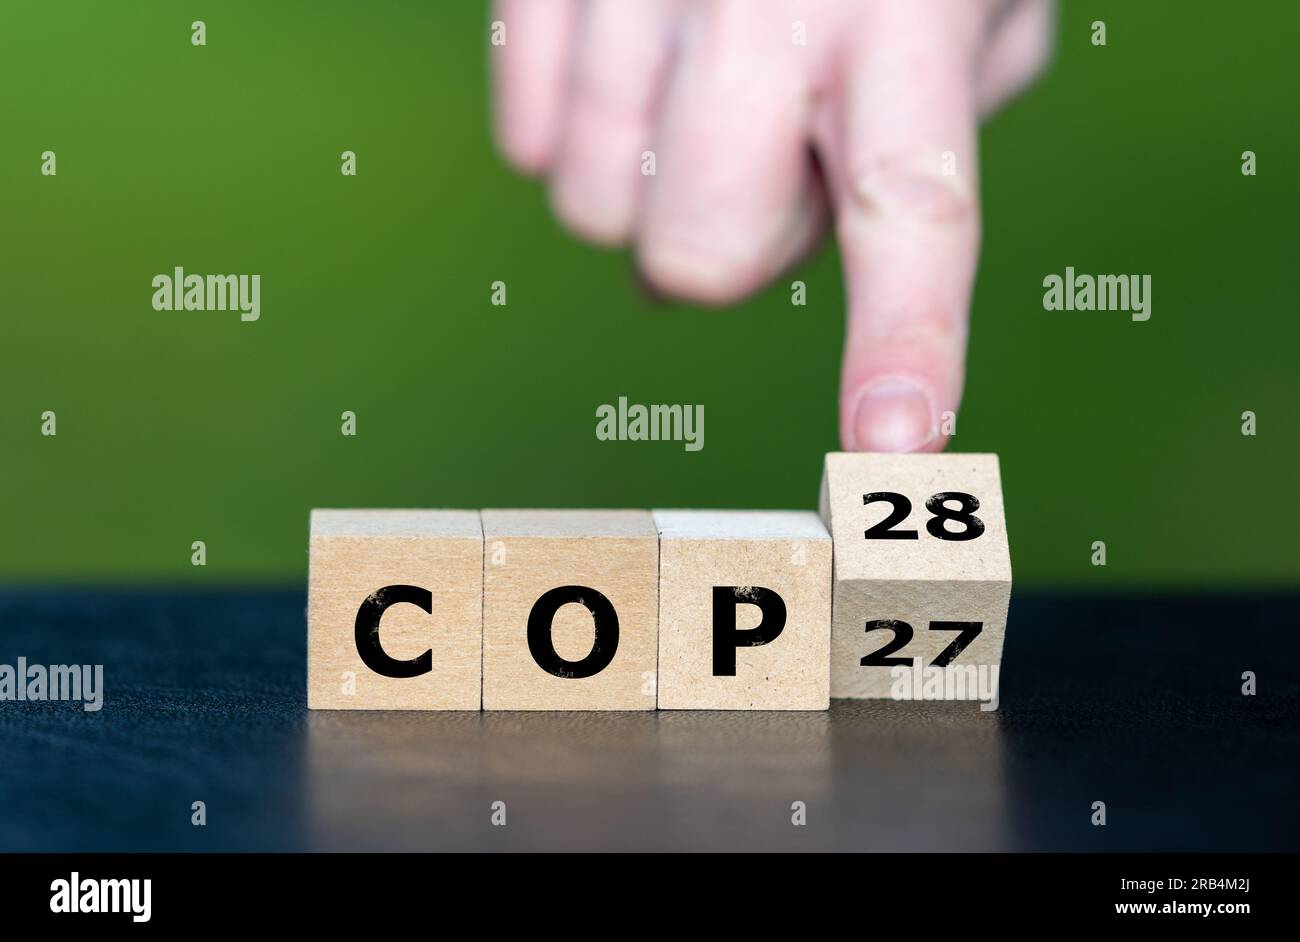 Simbolo della prossima conferenza sul clima. Mano ruota i cubi e cambia l'espressione "COP27" in "COP28". Foto Stock